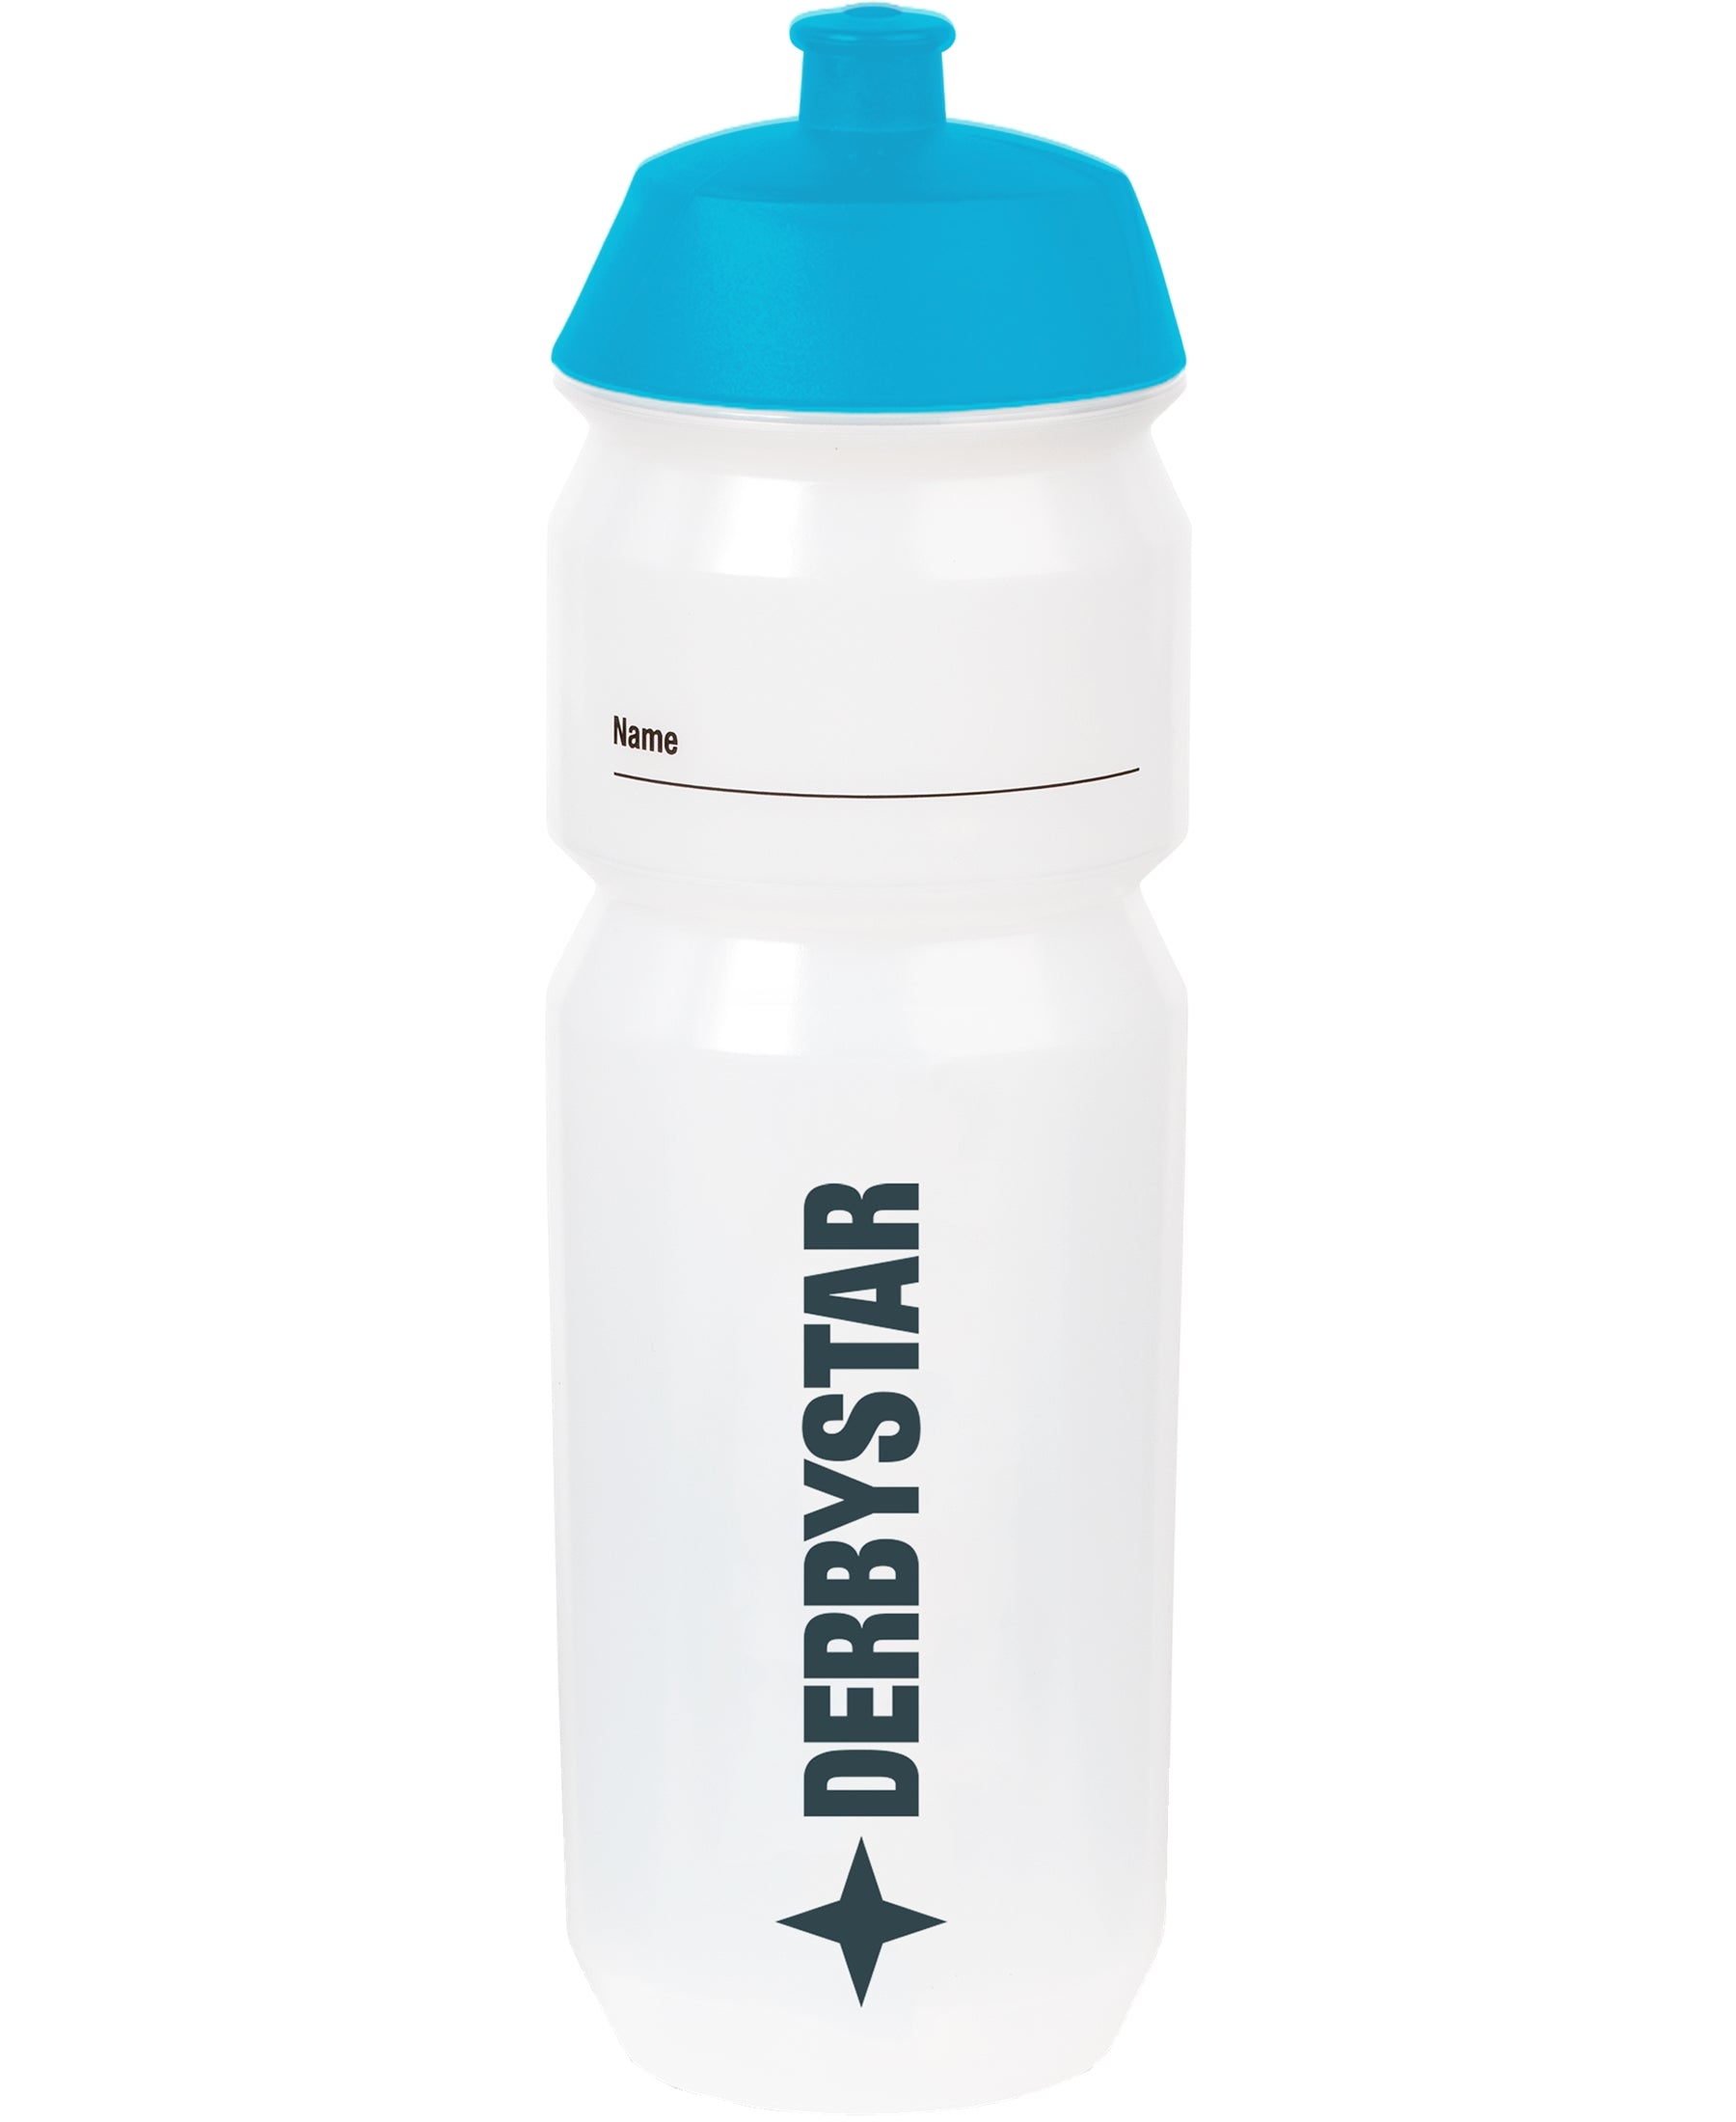 DERBYSTAR Bio Bottle Trinkflasche - Nachhaltige Trinkflasche aus umweltfreundlichem Material. BPA-frei und wiederverwendbar. Perfekt für Sport, Outdoor-Aktivitäten und den täglichen Gebrauch. Mit einem Fassungsvermögen von 0,7 Litern und einem auslaufsicheren Design. Erhältlich in verschiedenen Farben. Bestellen Sie jetzt bei SHOP4TEAMSPORT und tragen Sie aktiv zum Umweltschutz bei. Ideal für eine gesunde Lebensweise und den bewussten Umgang mit Ressourcen.